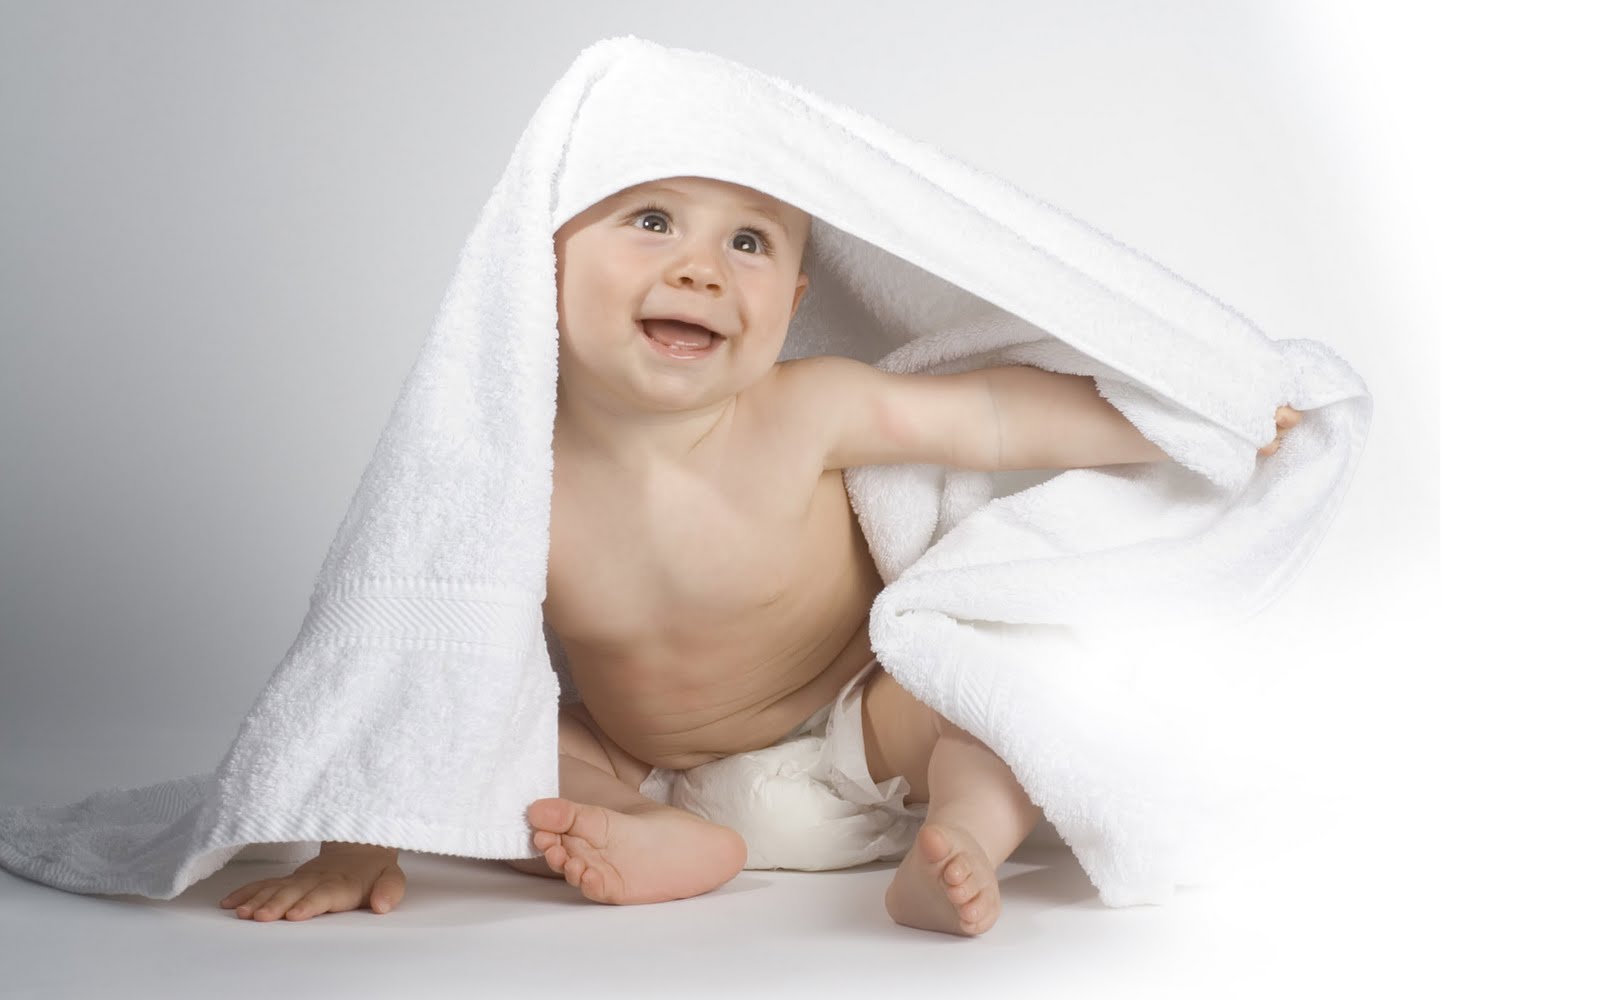 Gambar Bayi Bayi Lucu Dan Imut Si Gambar